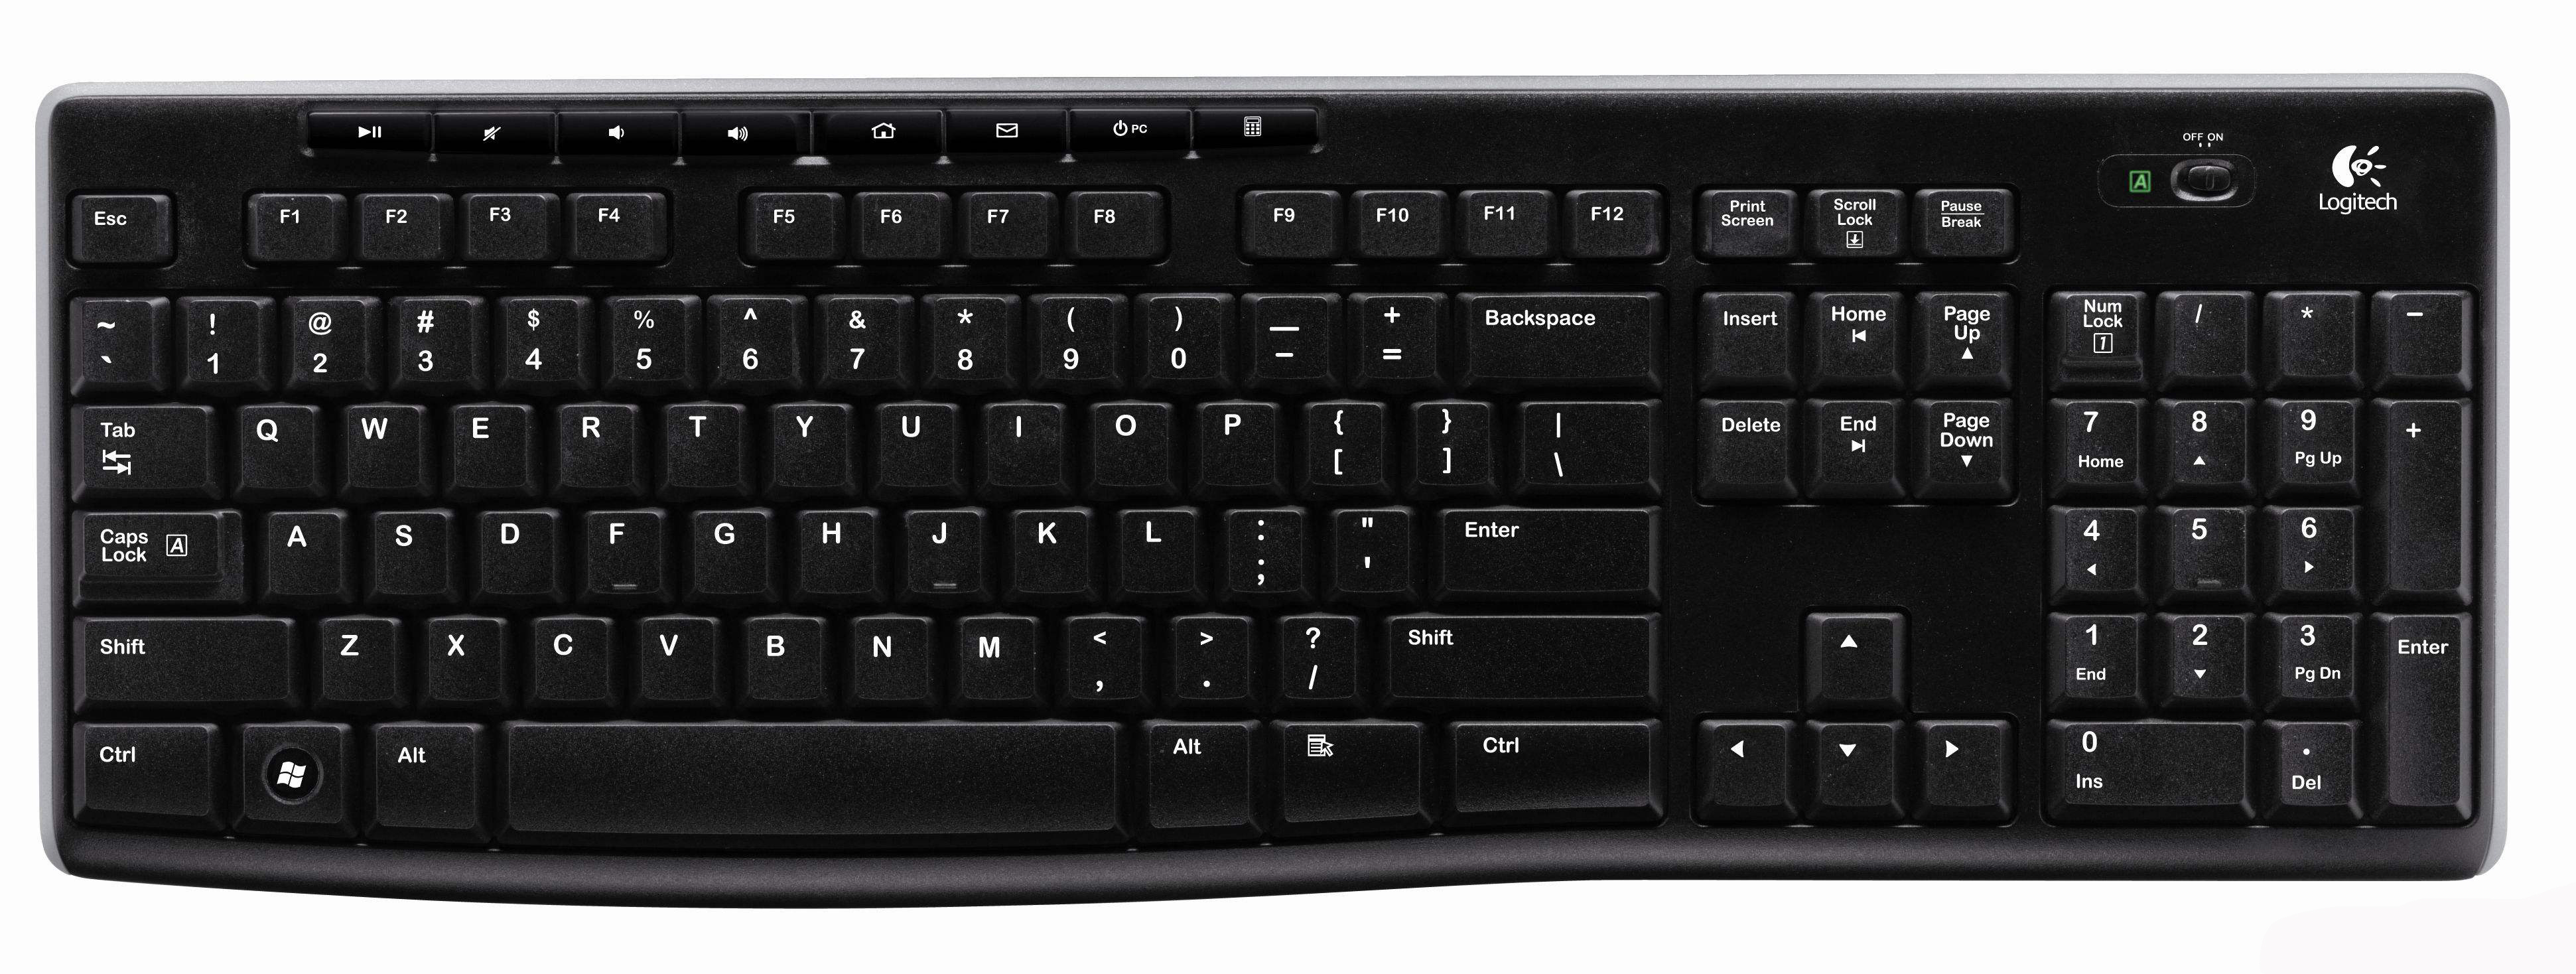 键盘上的保存键是哪一个